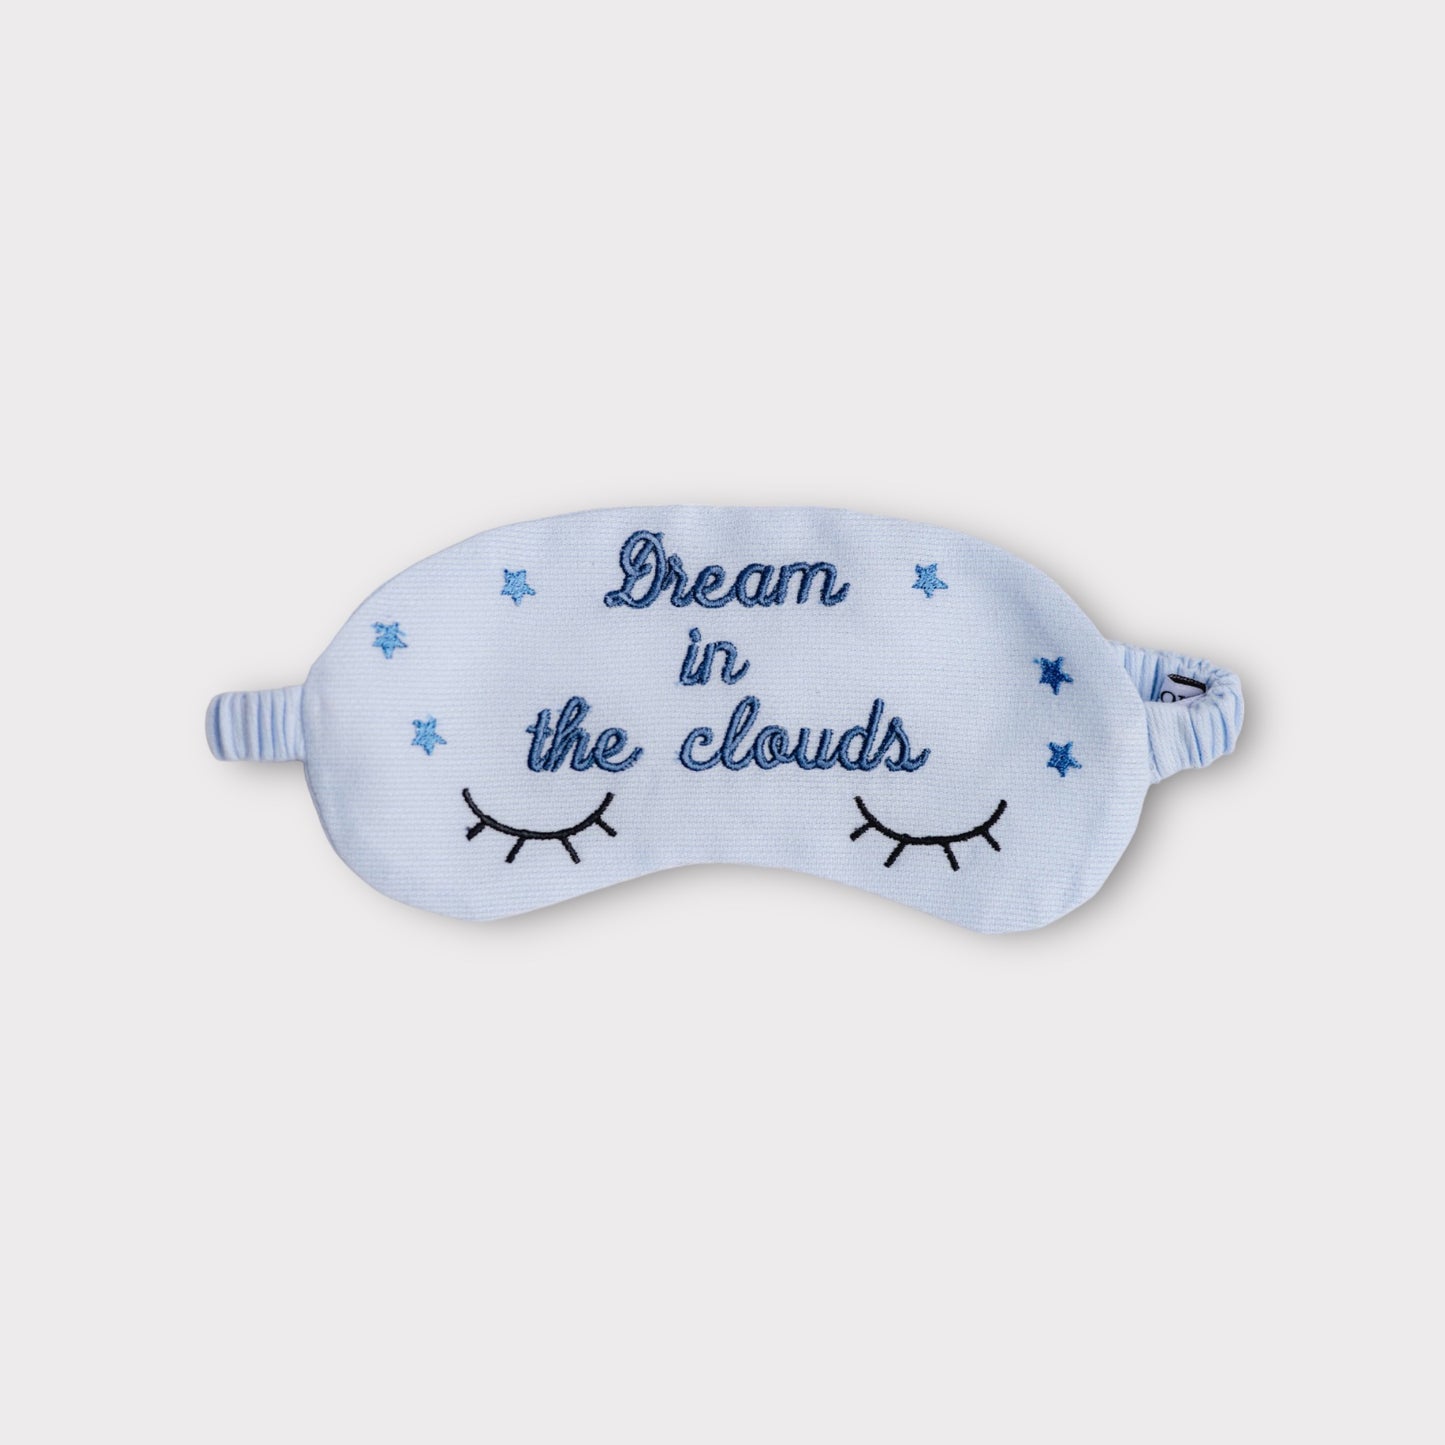 Mascherina per Dormire "Dream in the Clouds" celeste - Accessorio per il Sonno dei Bambini in Viaggio